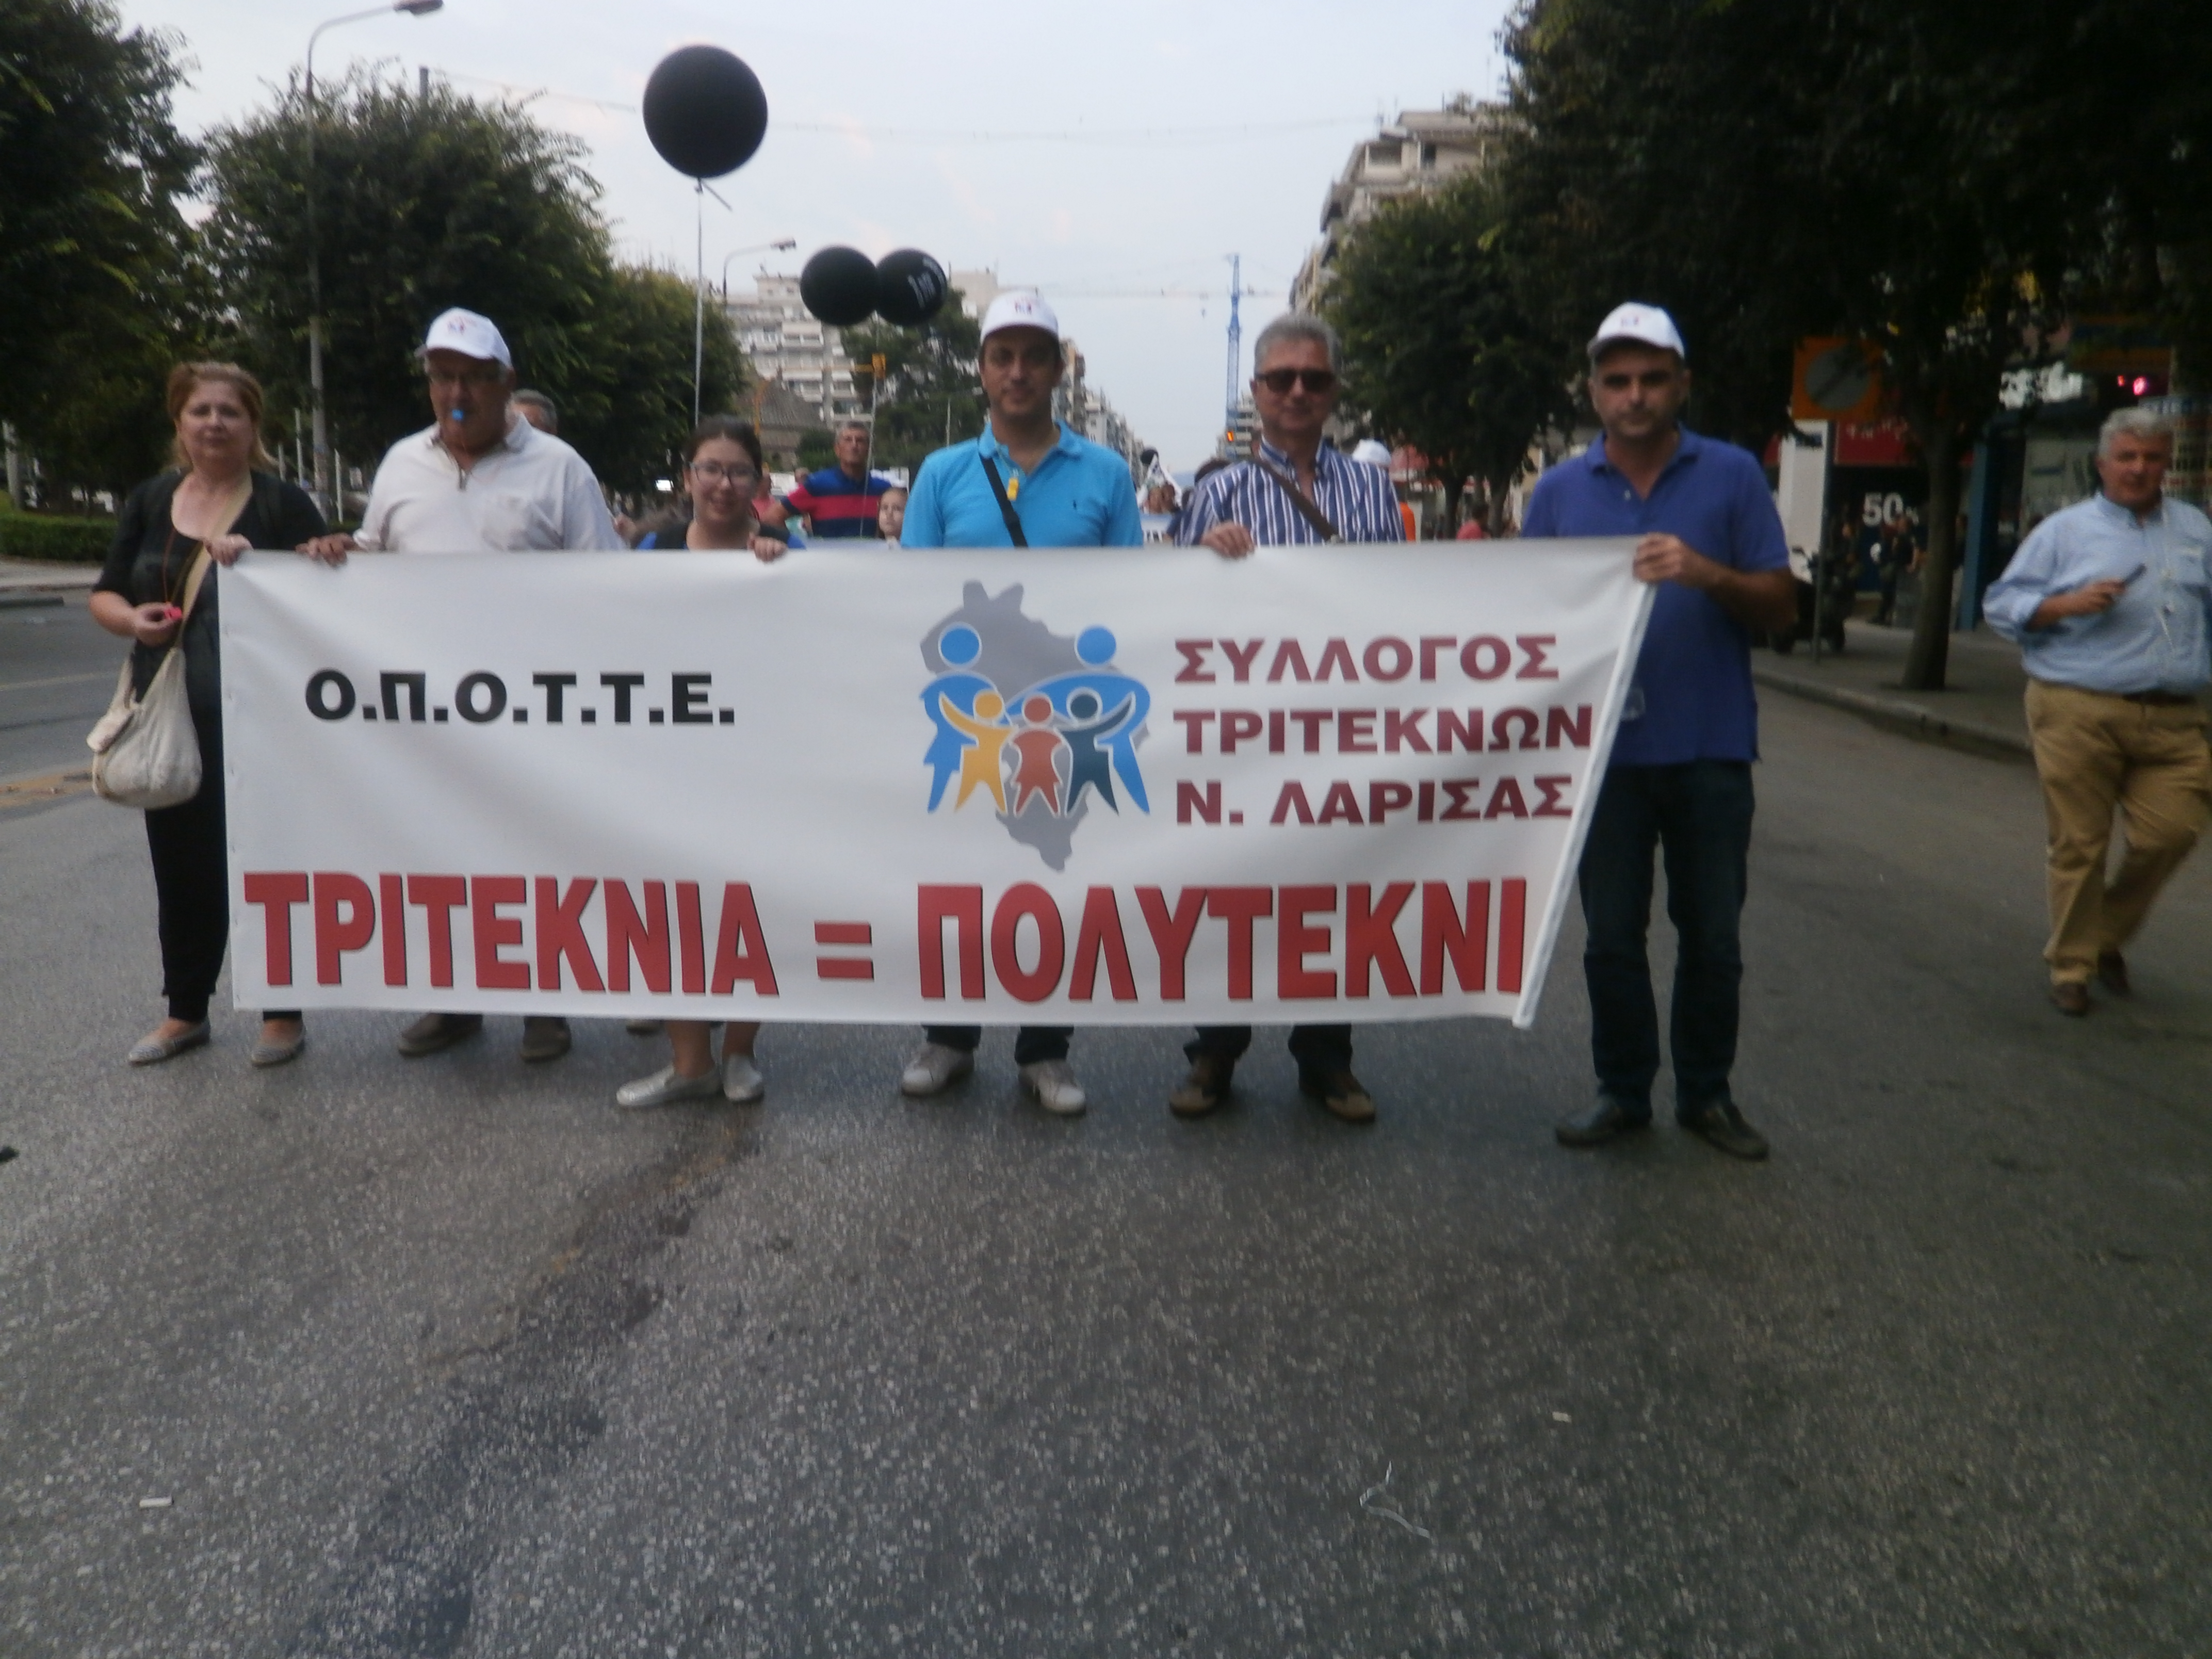 Διαμαρτυρία Τρίτεκνων Λάρισας στη Θεσσαλονίκη